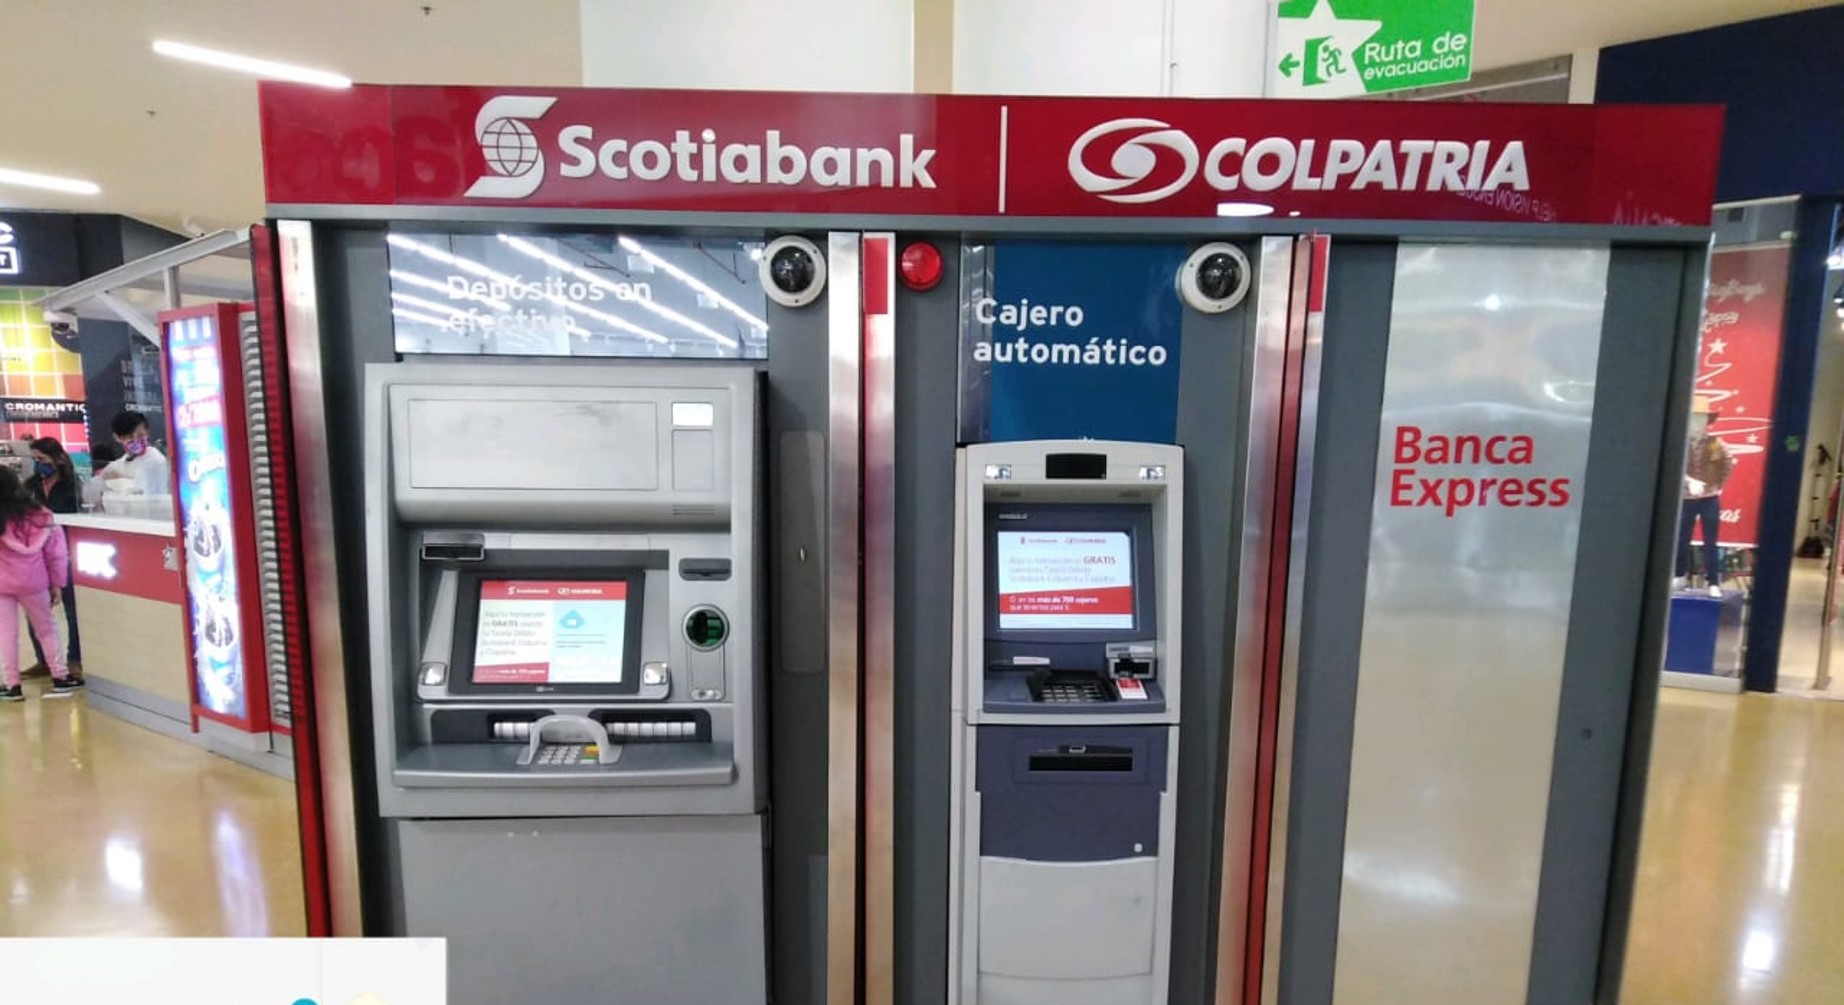 Scotiabank Colpatria anuncia cambio en sus tarjetas de crédito y promete devolver 5 % en cuentas de ahorro en Colombia.